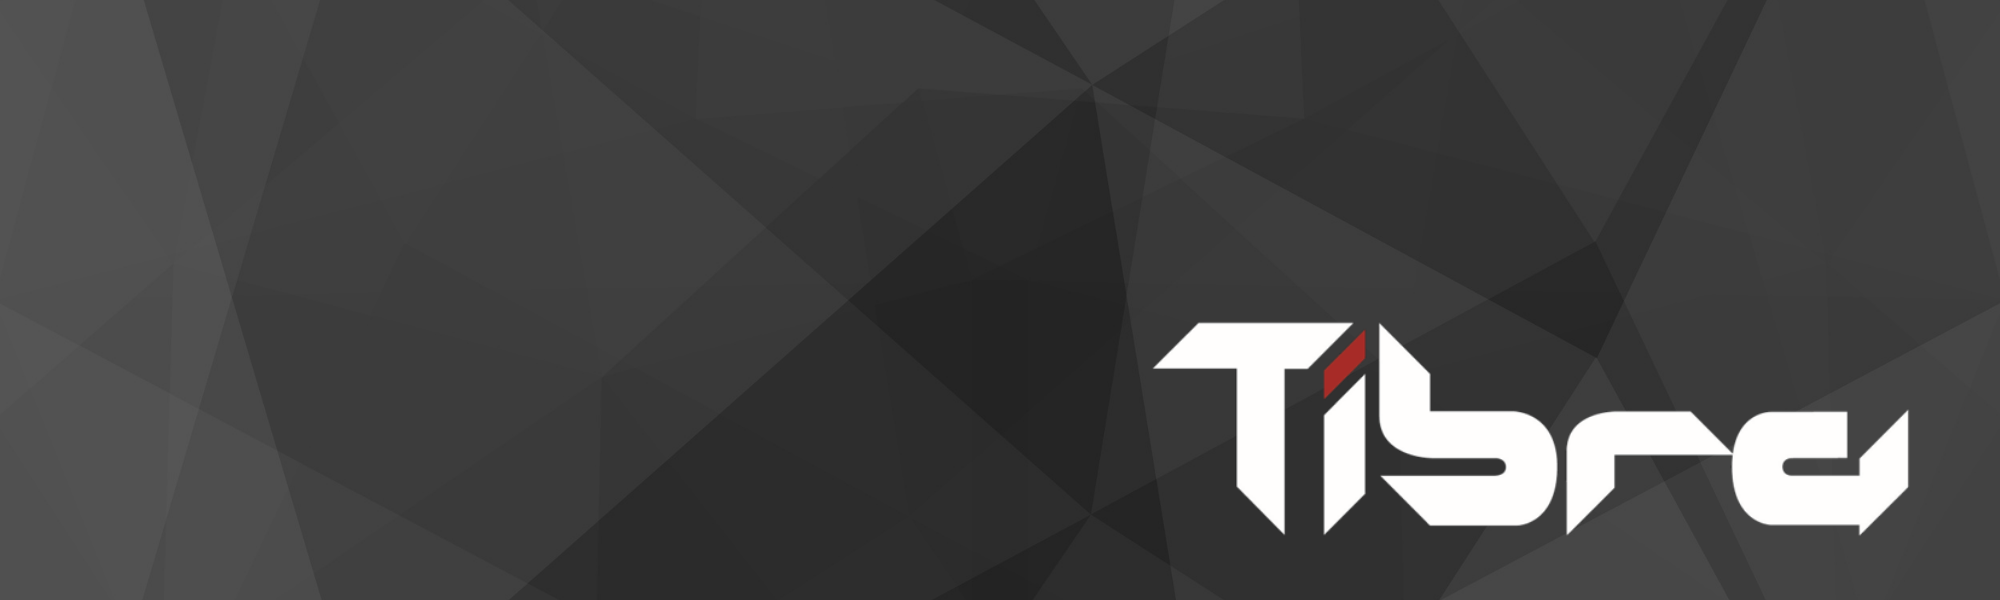 Tibra profile banner